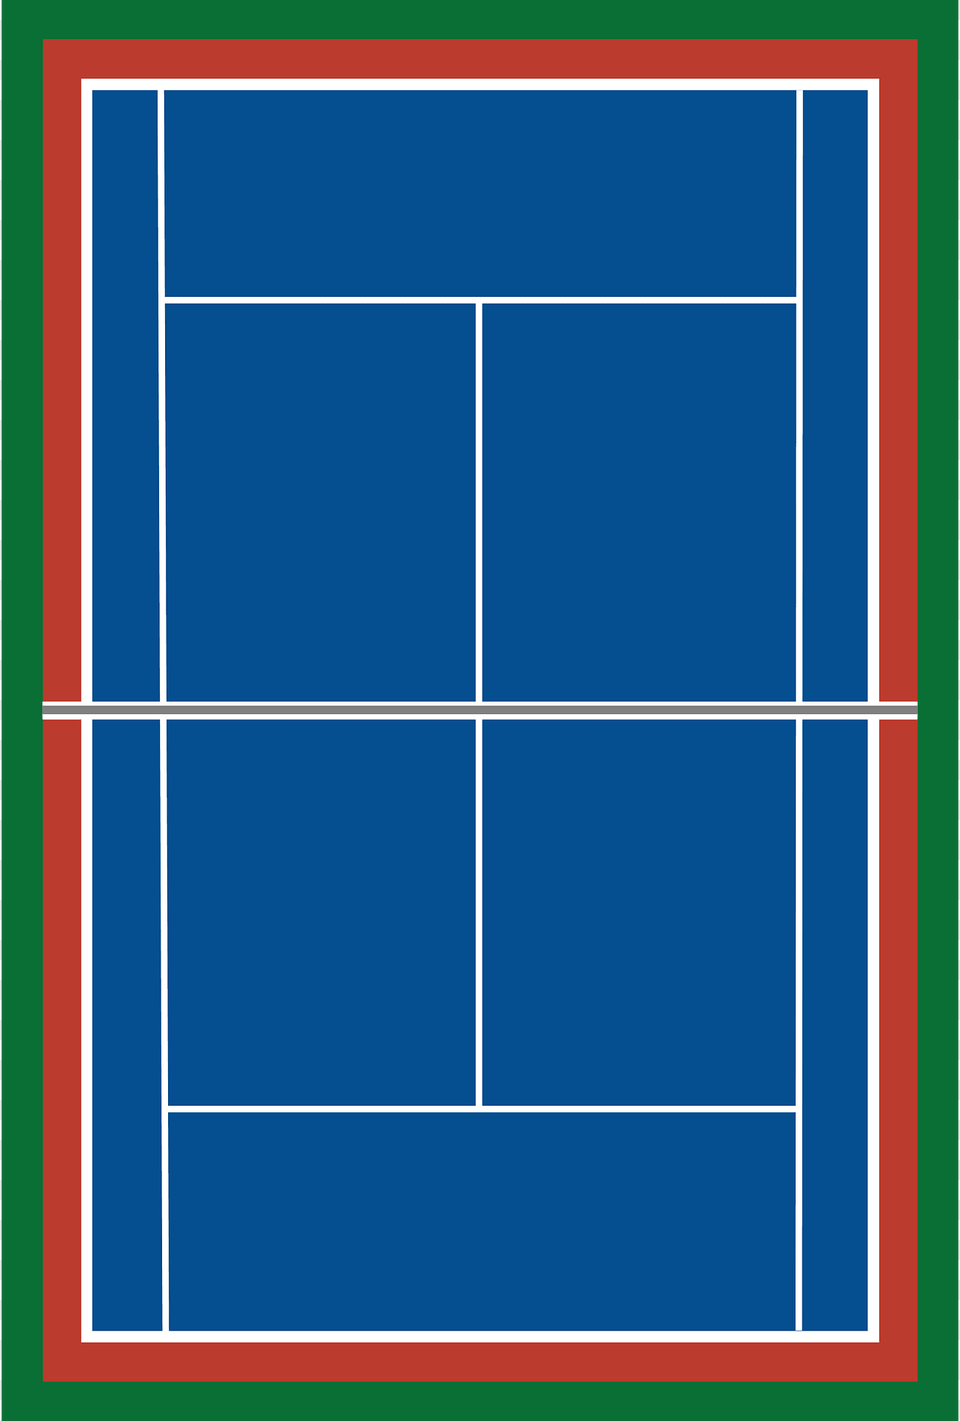 Tennis Court Clipart, Ball, Sport, Tennis Ball Free Transparent Png